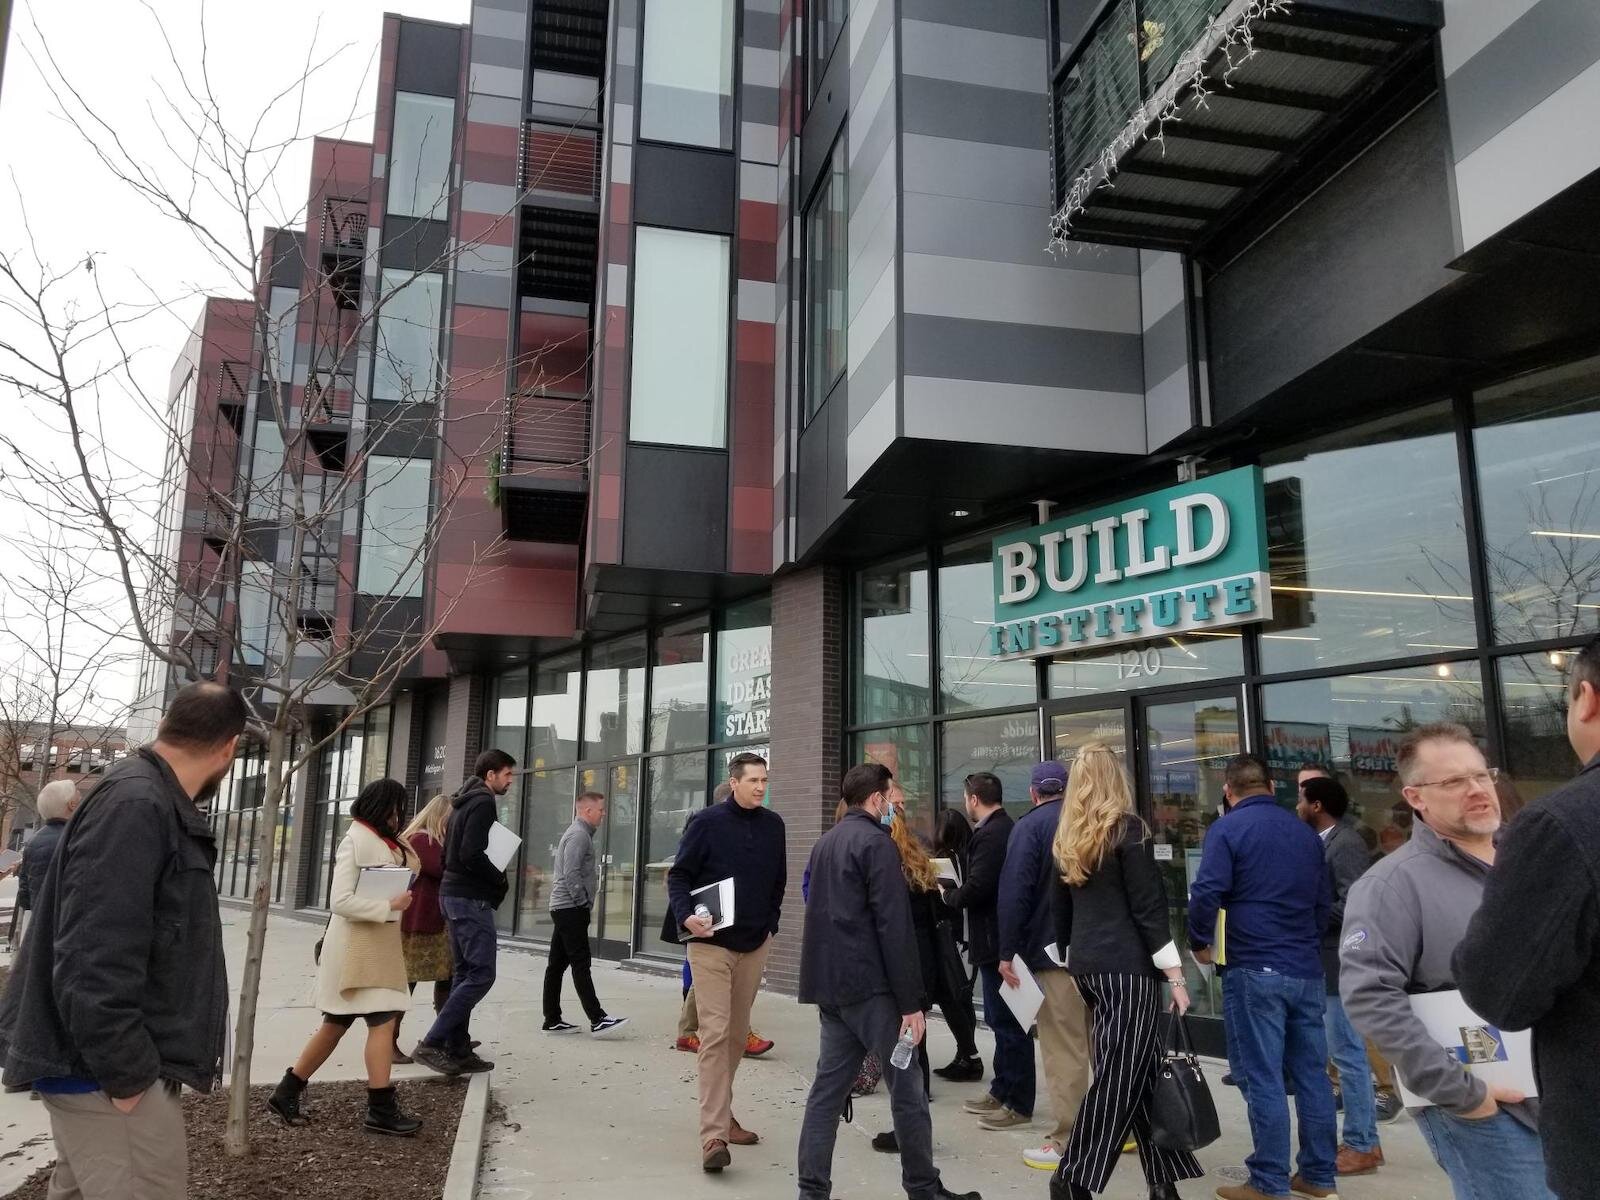 The Build Institute, a startup incubator, in Detroit, Mich.